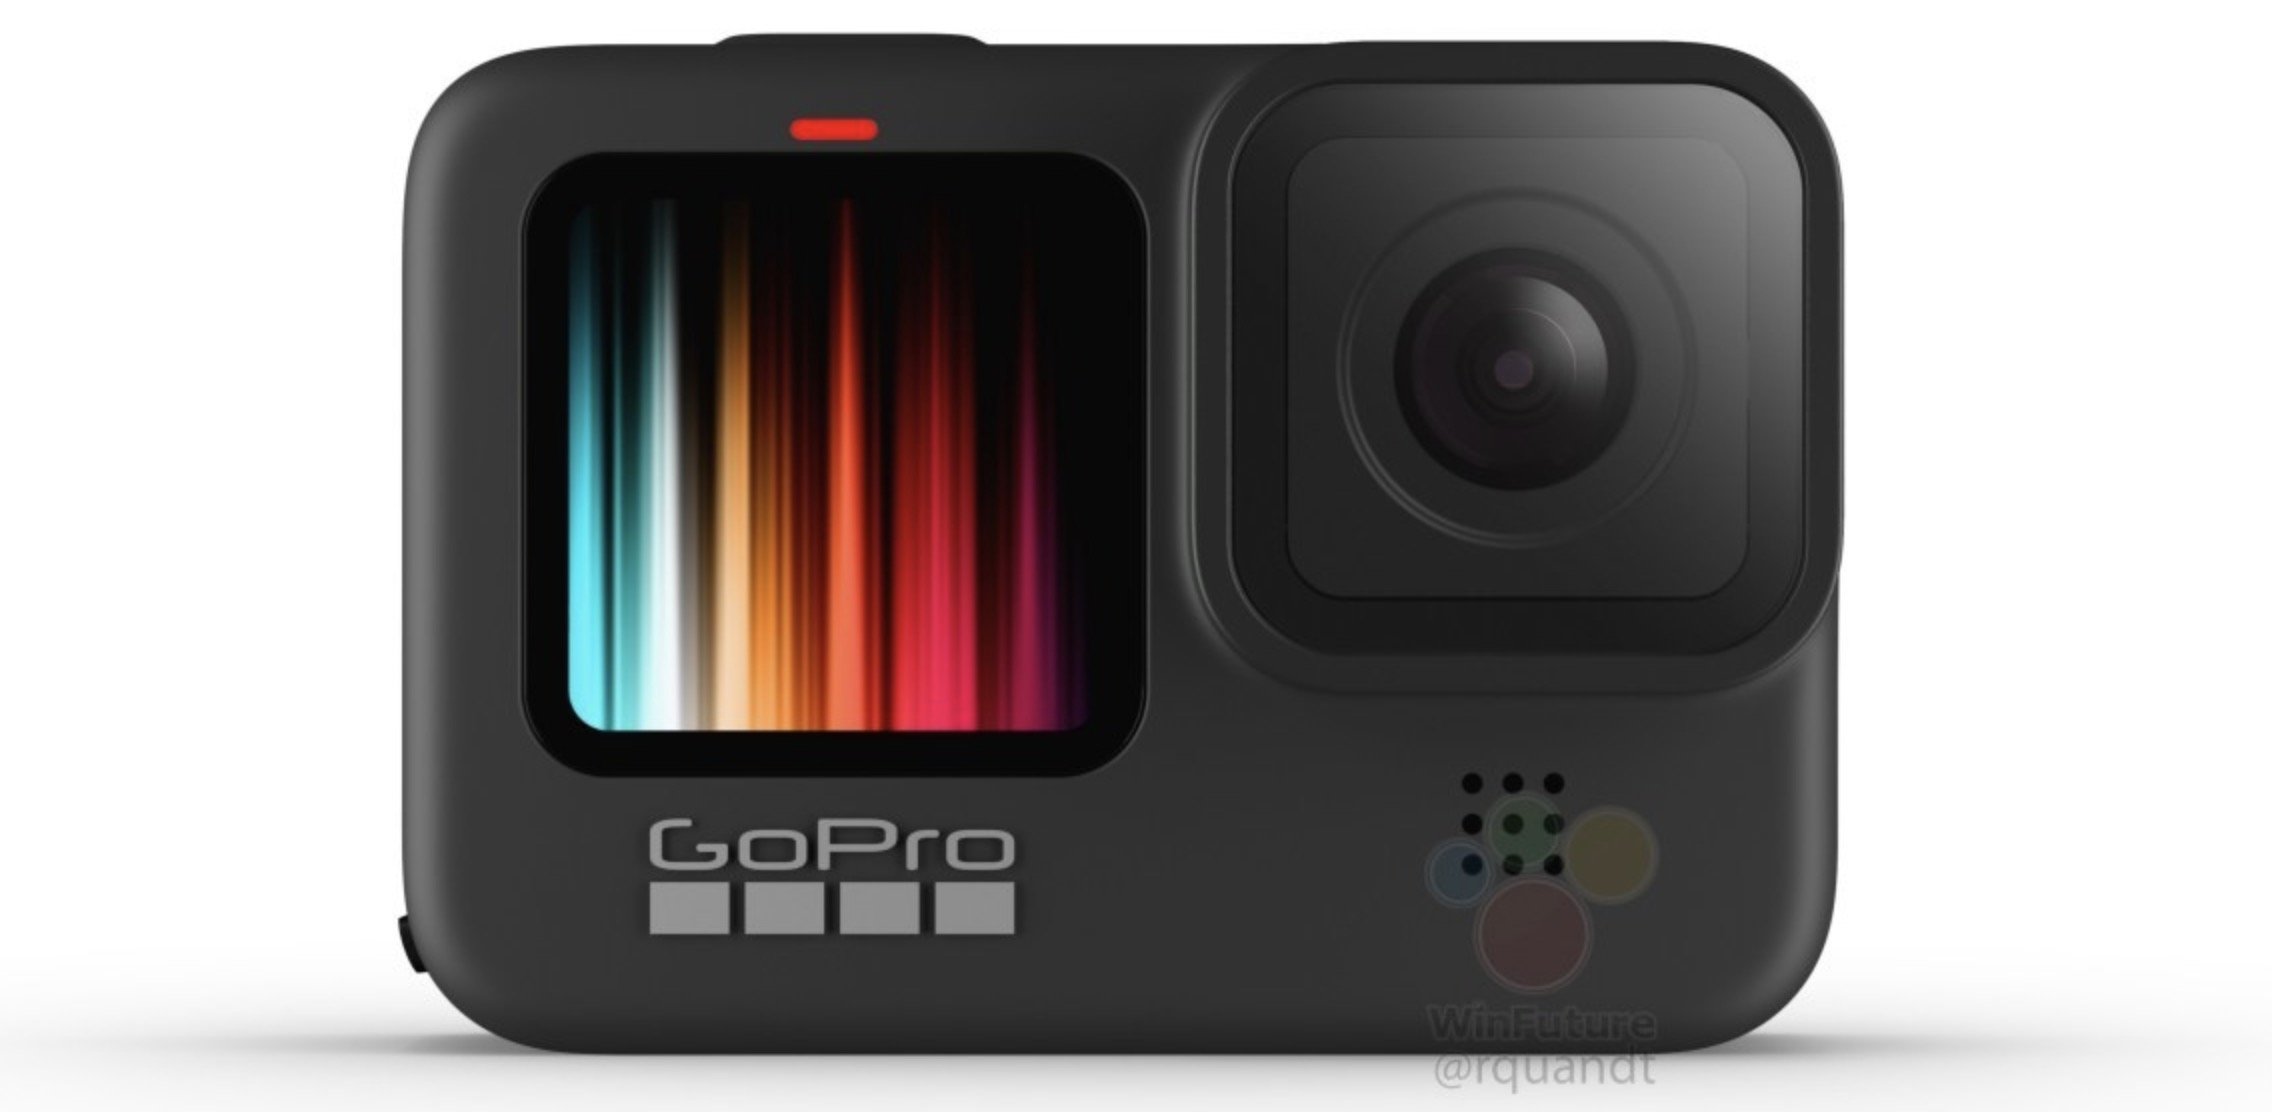 Imagem da suposta GoPro Hero 9 Black com tela frontal colorida.